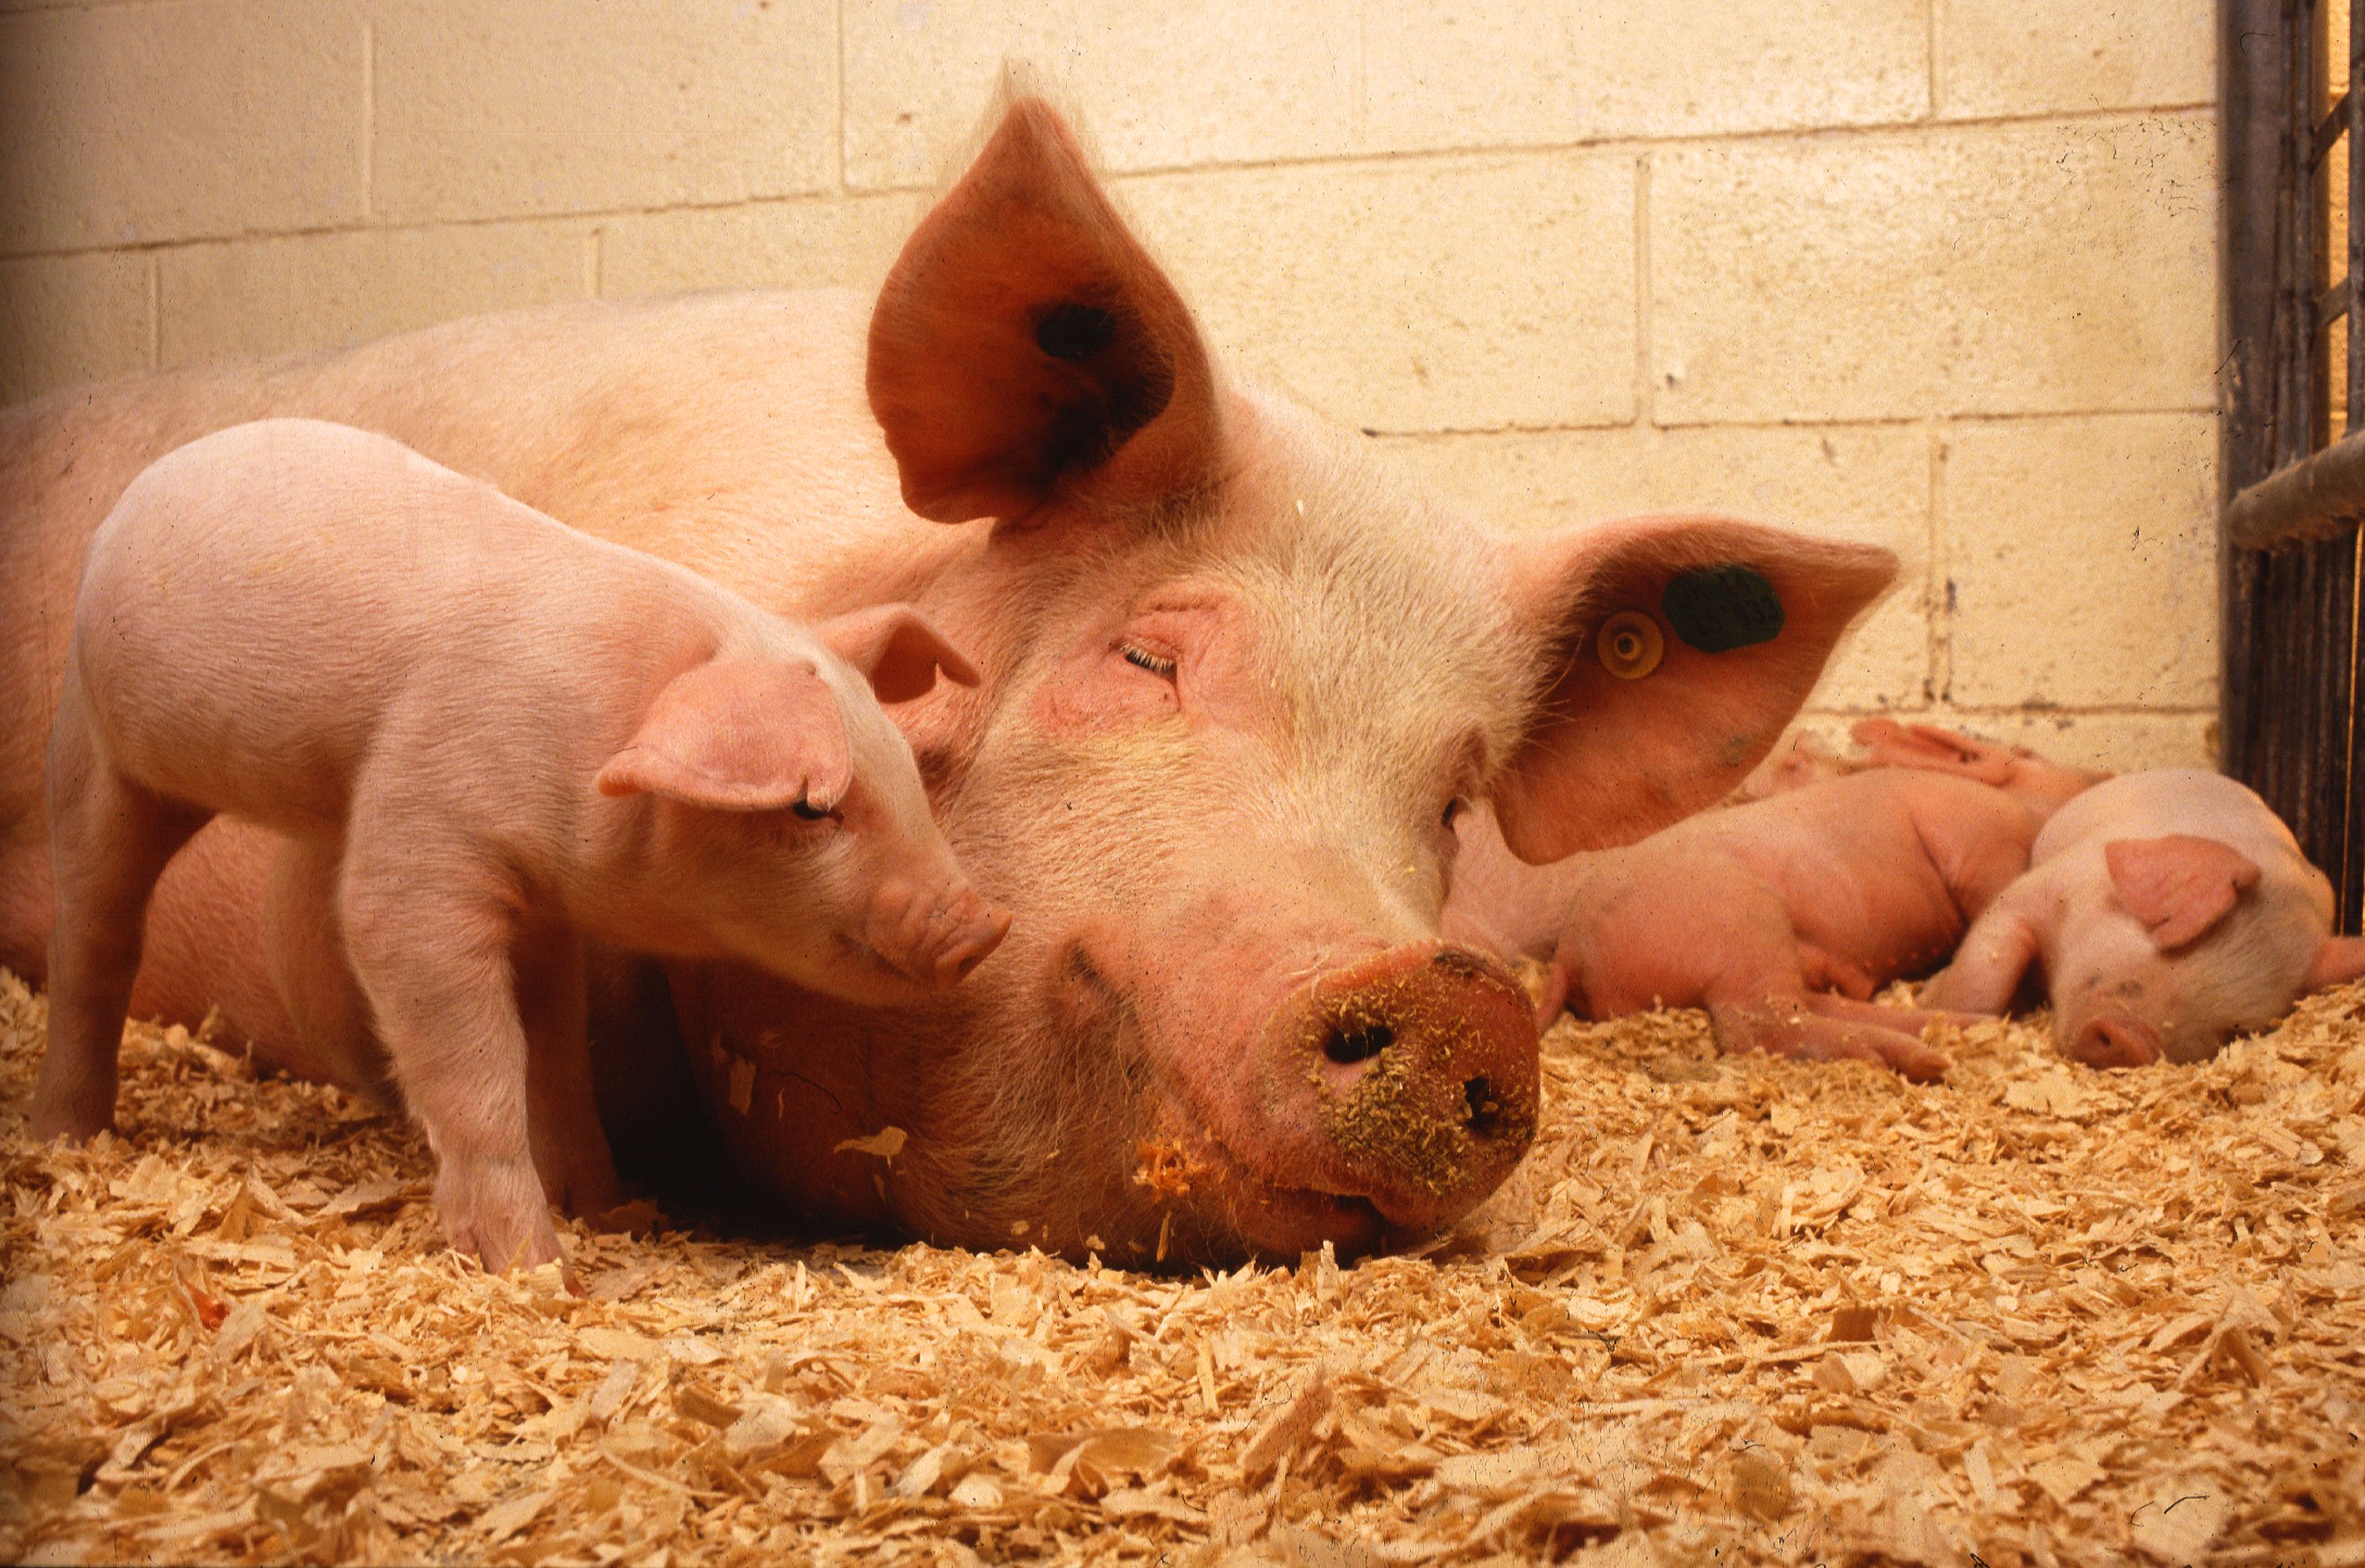 Züchten menschliche Organe in Schweinen. Was kann schief gehen?